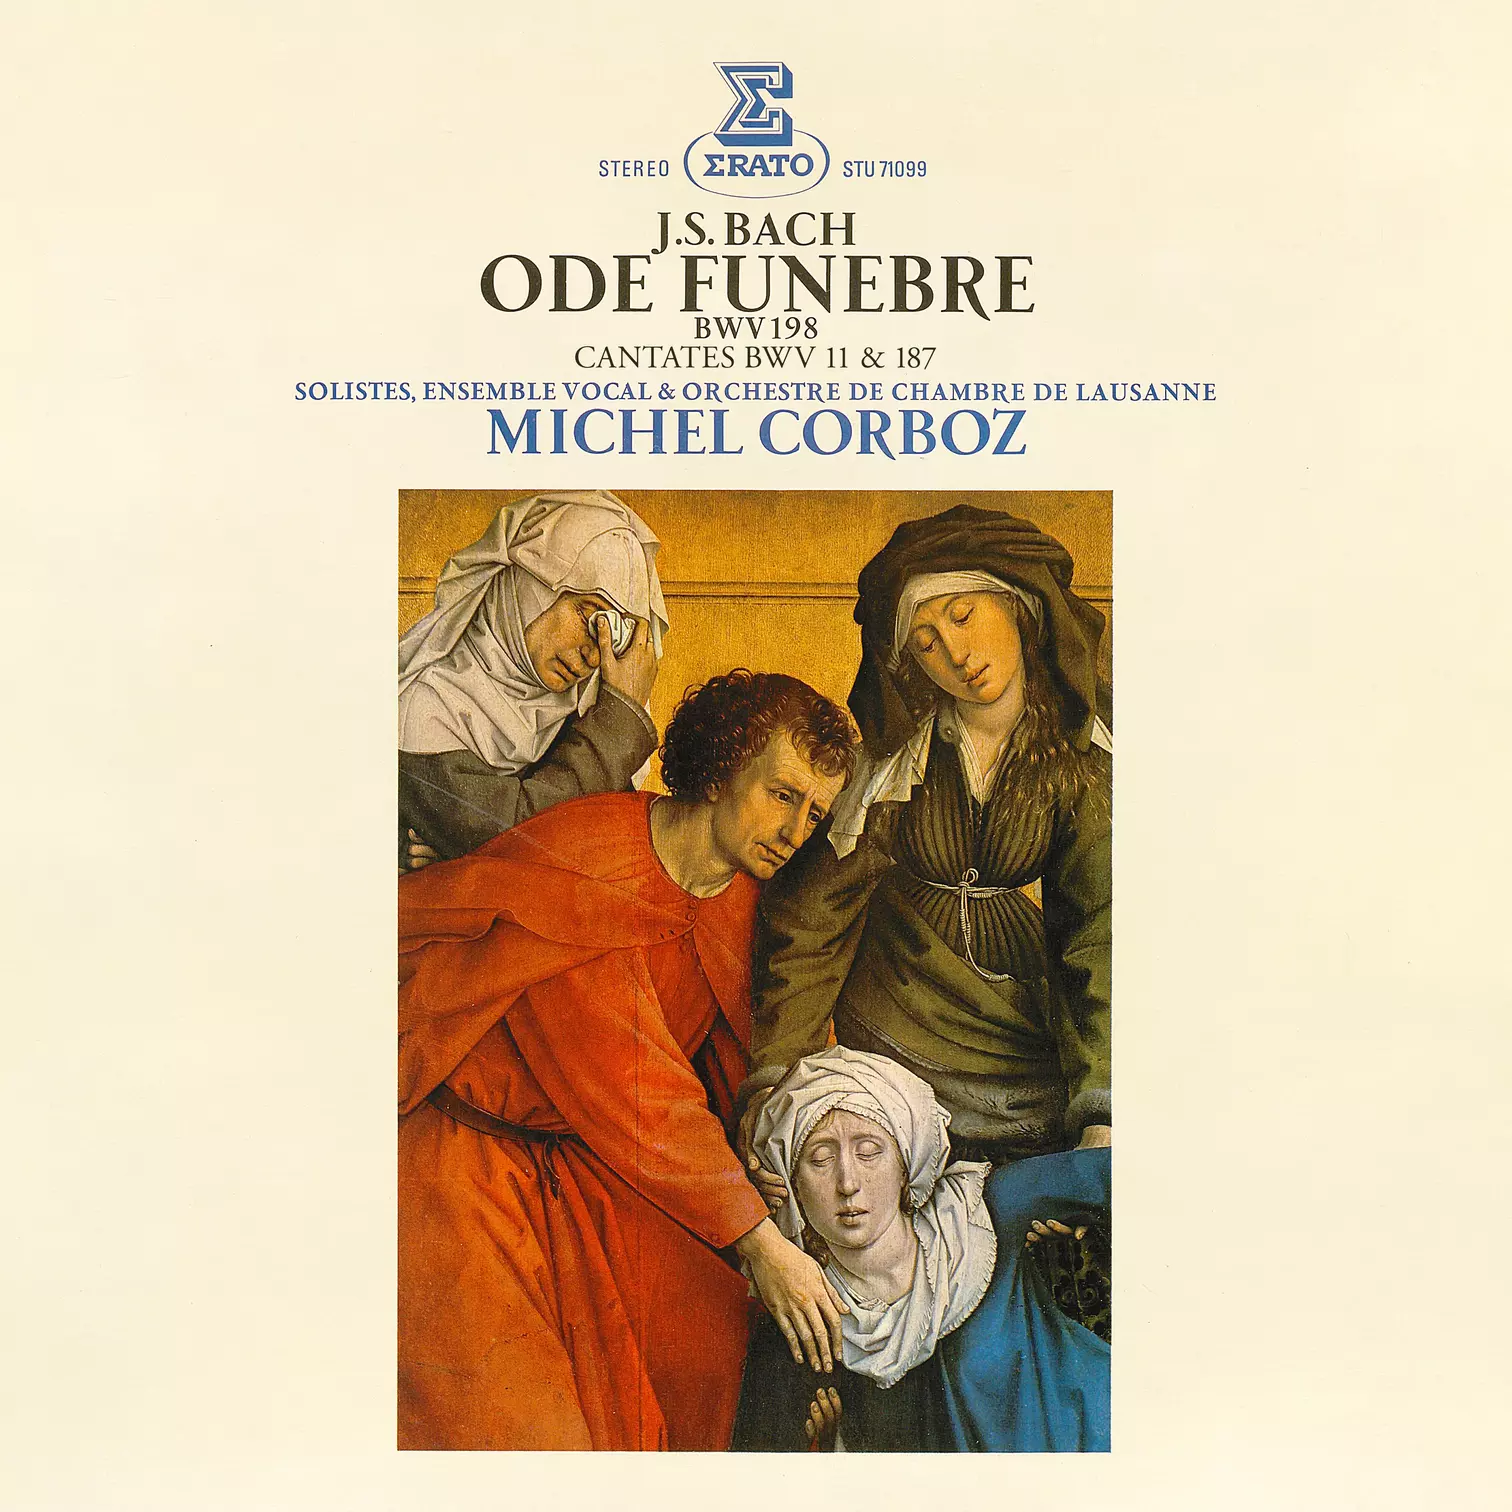 Bach: Ode funèbre, BWV 198 & Cantates, BWV 11 "Oratorio de l'Ascension" & 187